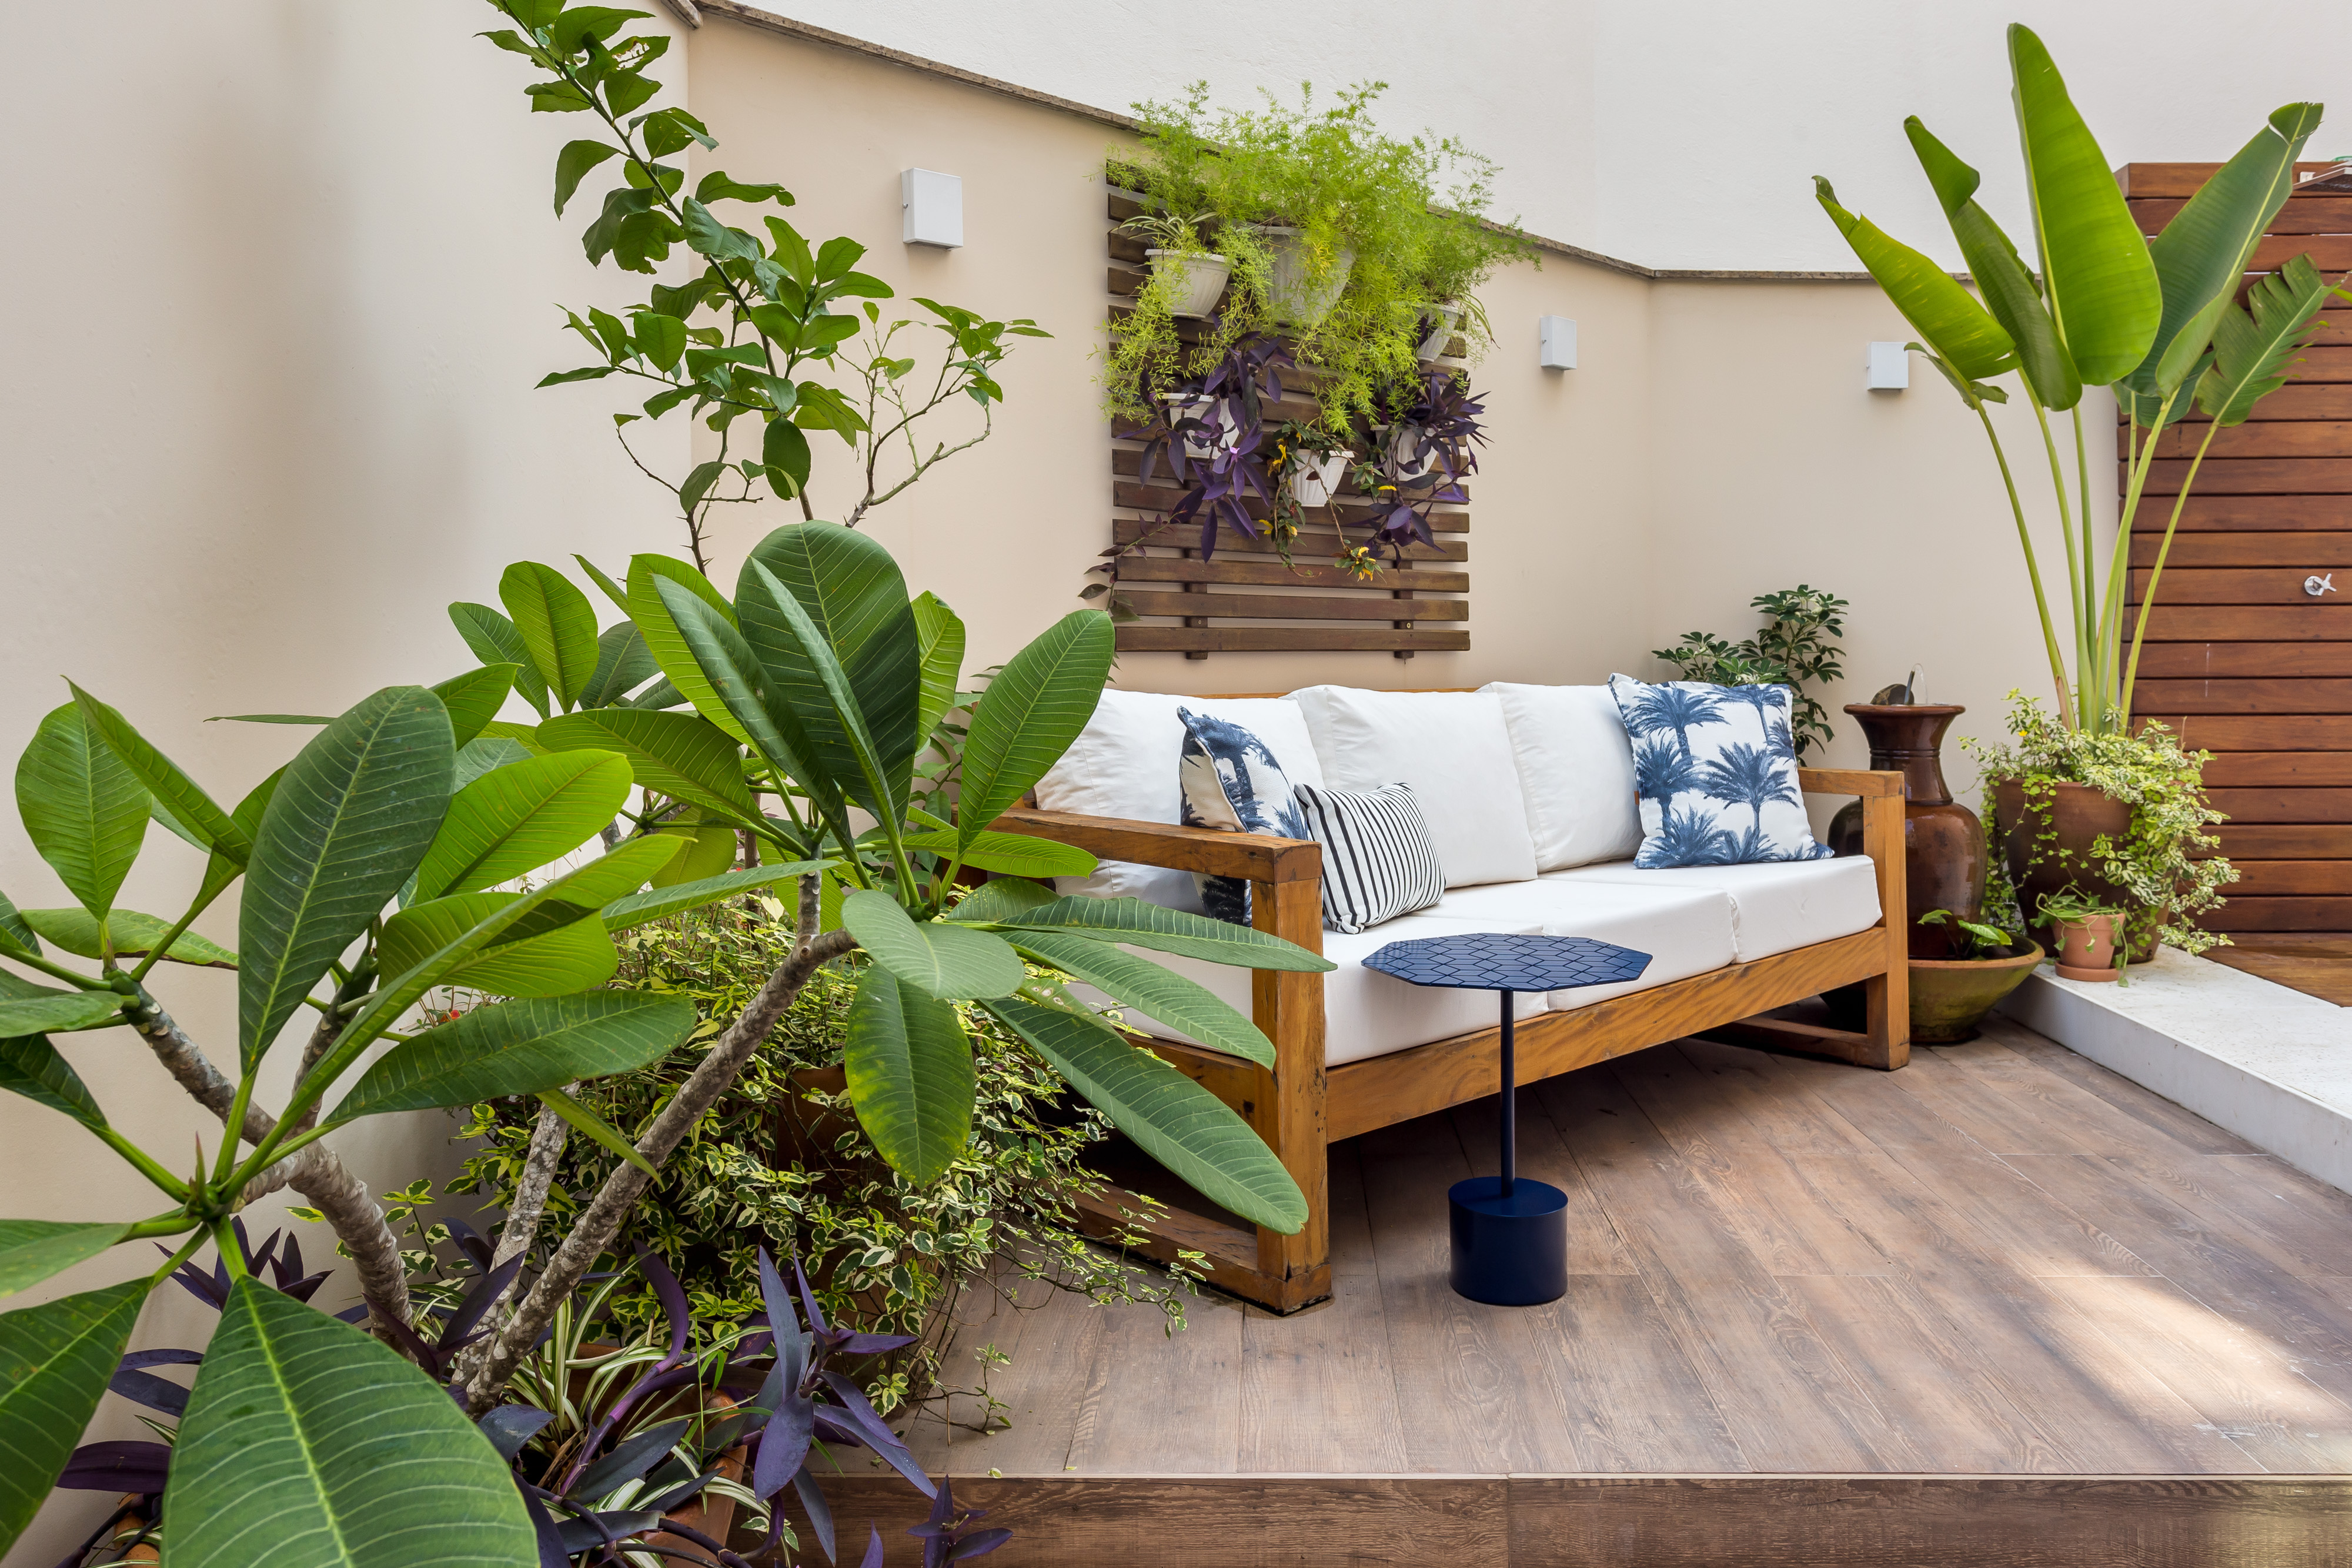 Área externa de um apartamento térreo com paisagismo que lembra quintal de casa, namoradeira branca com marrom e jardim vertical